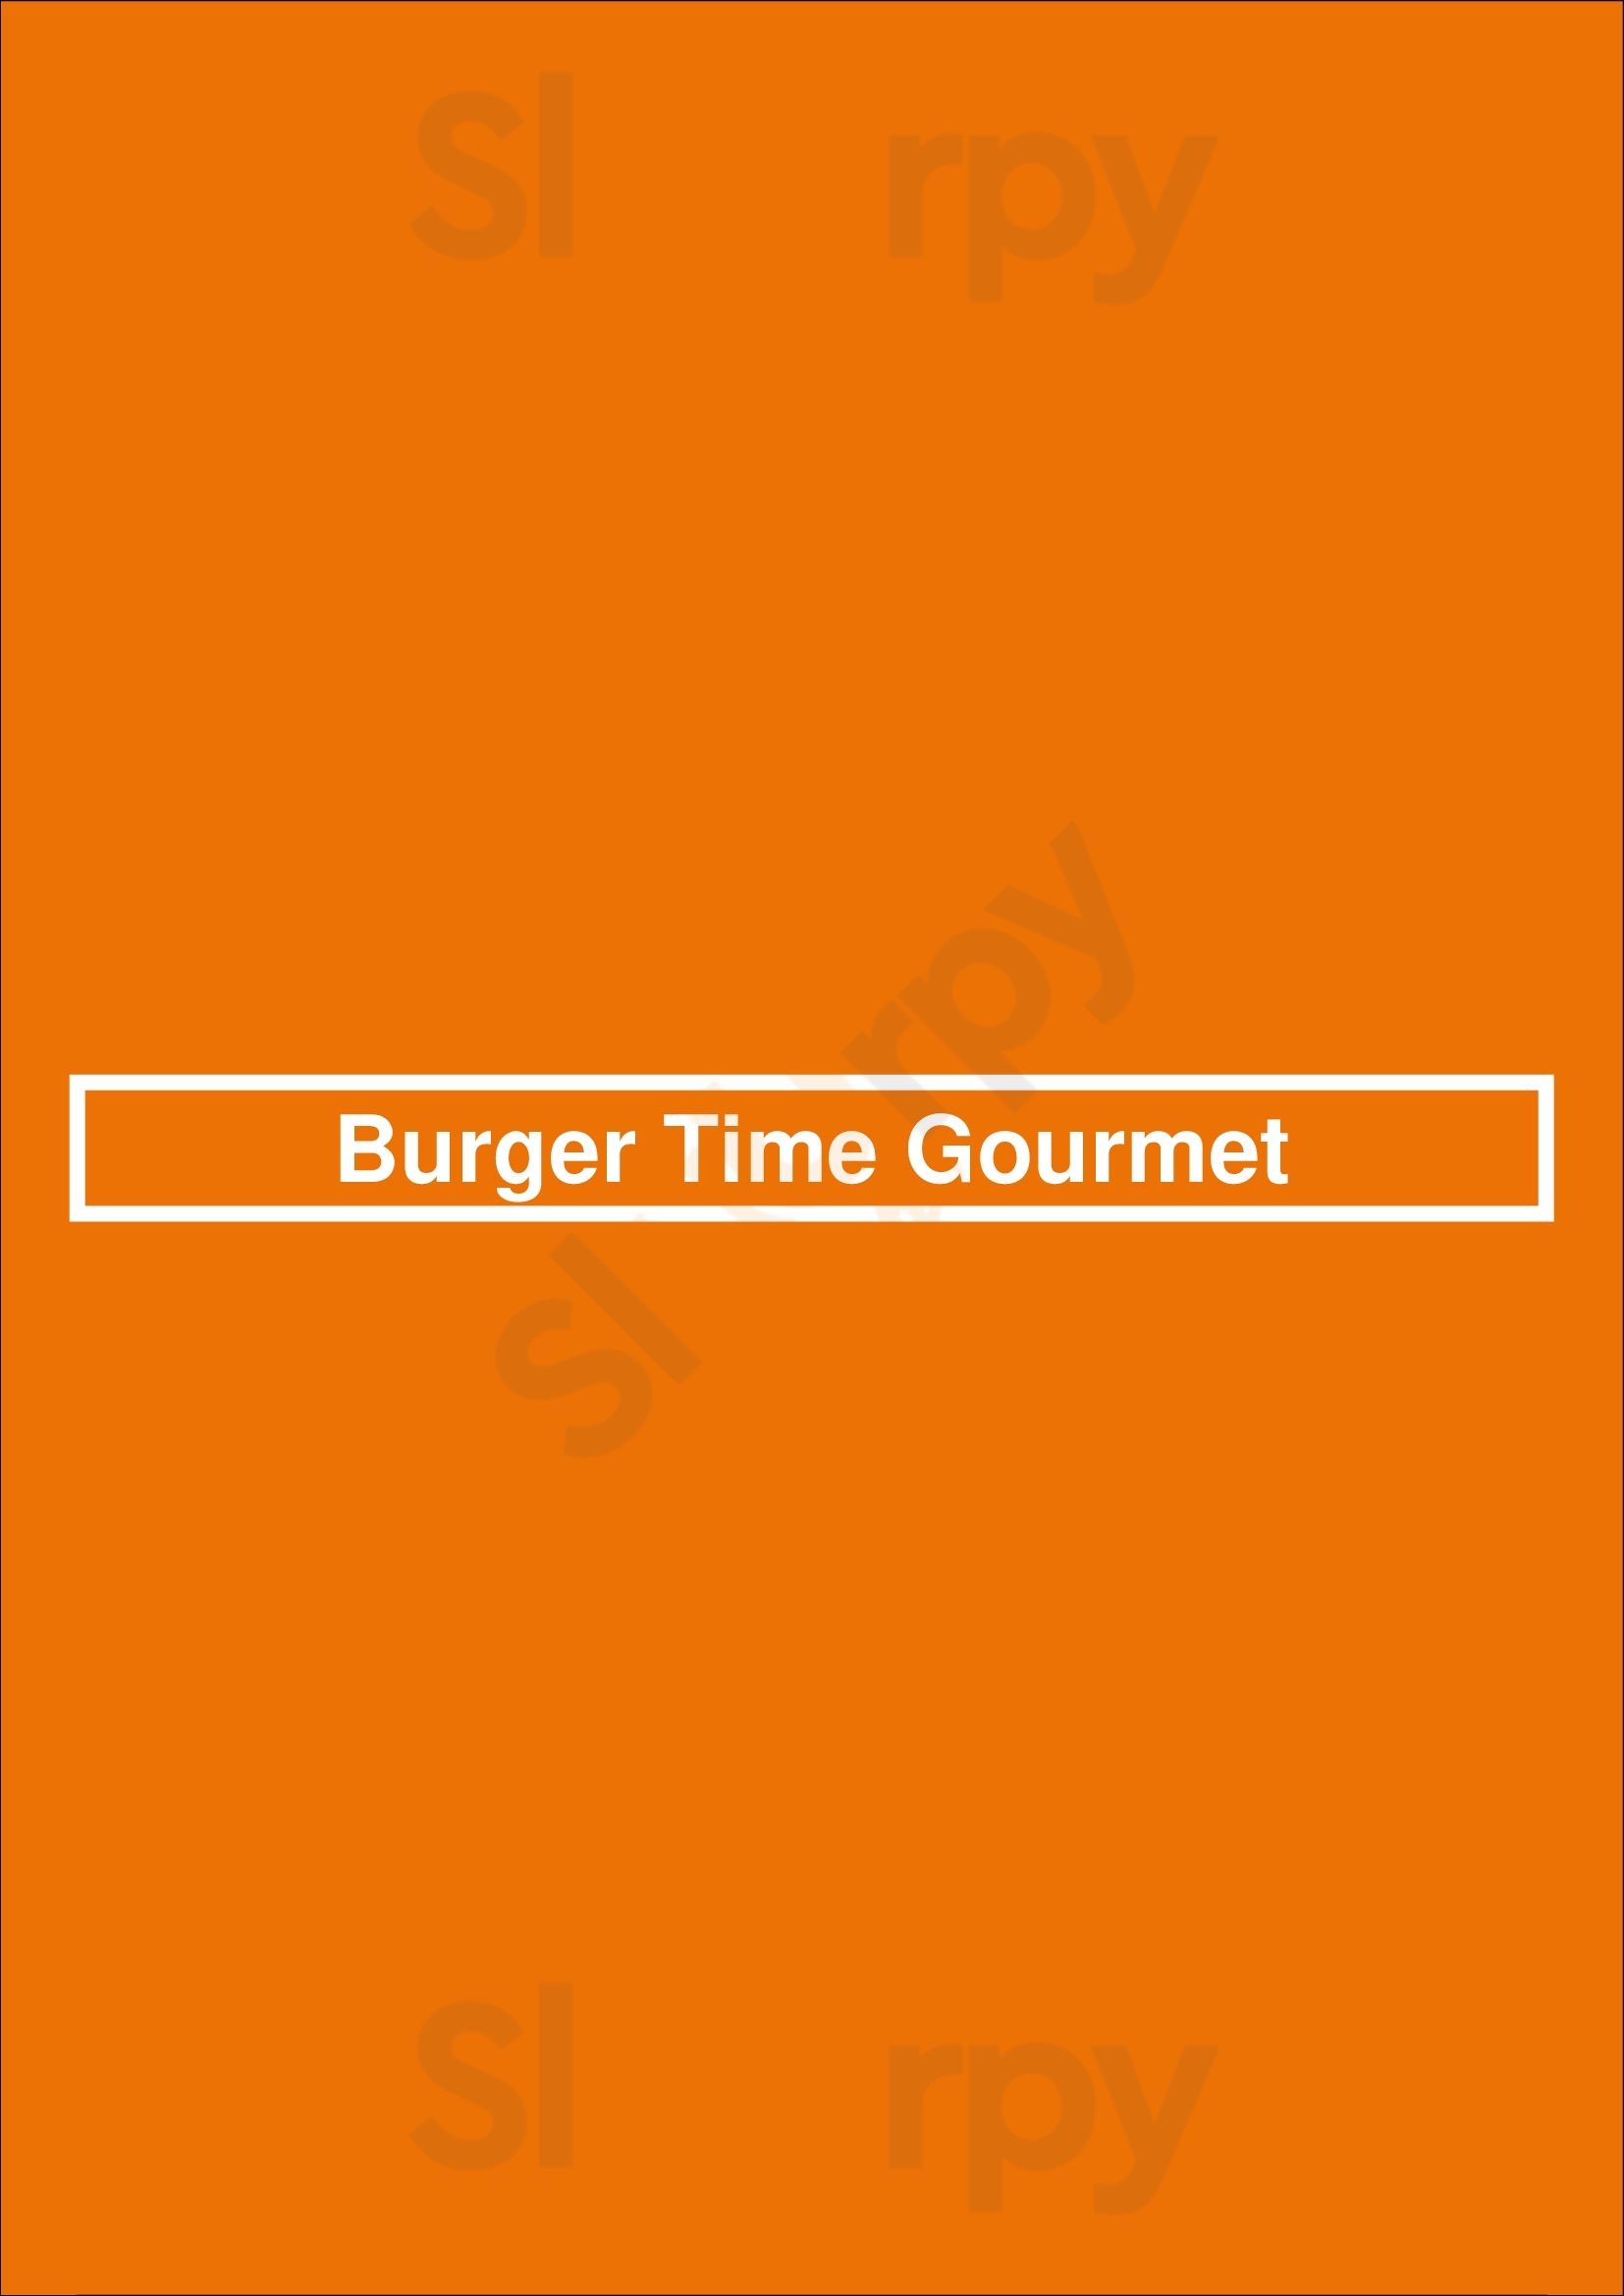 Burger Time Gourmet Barcelona Menu - 1